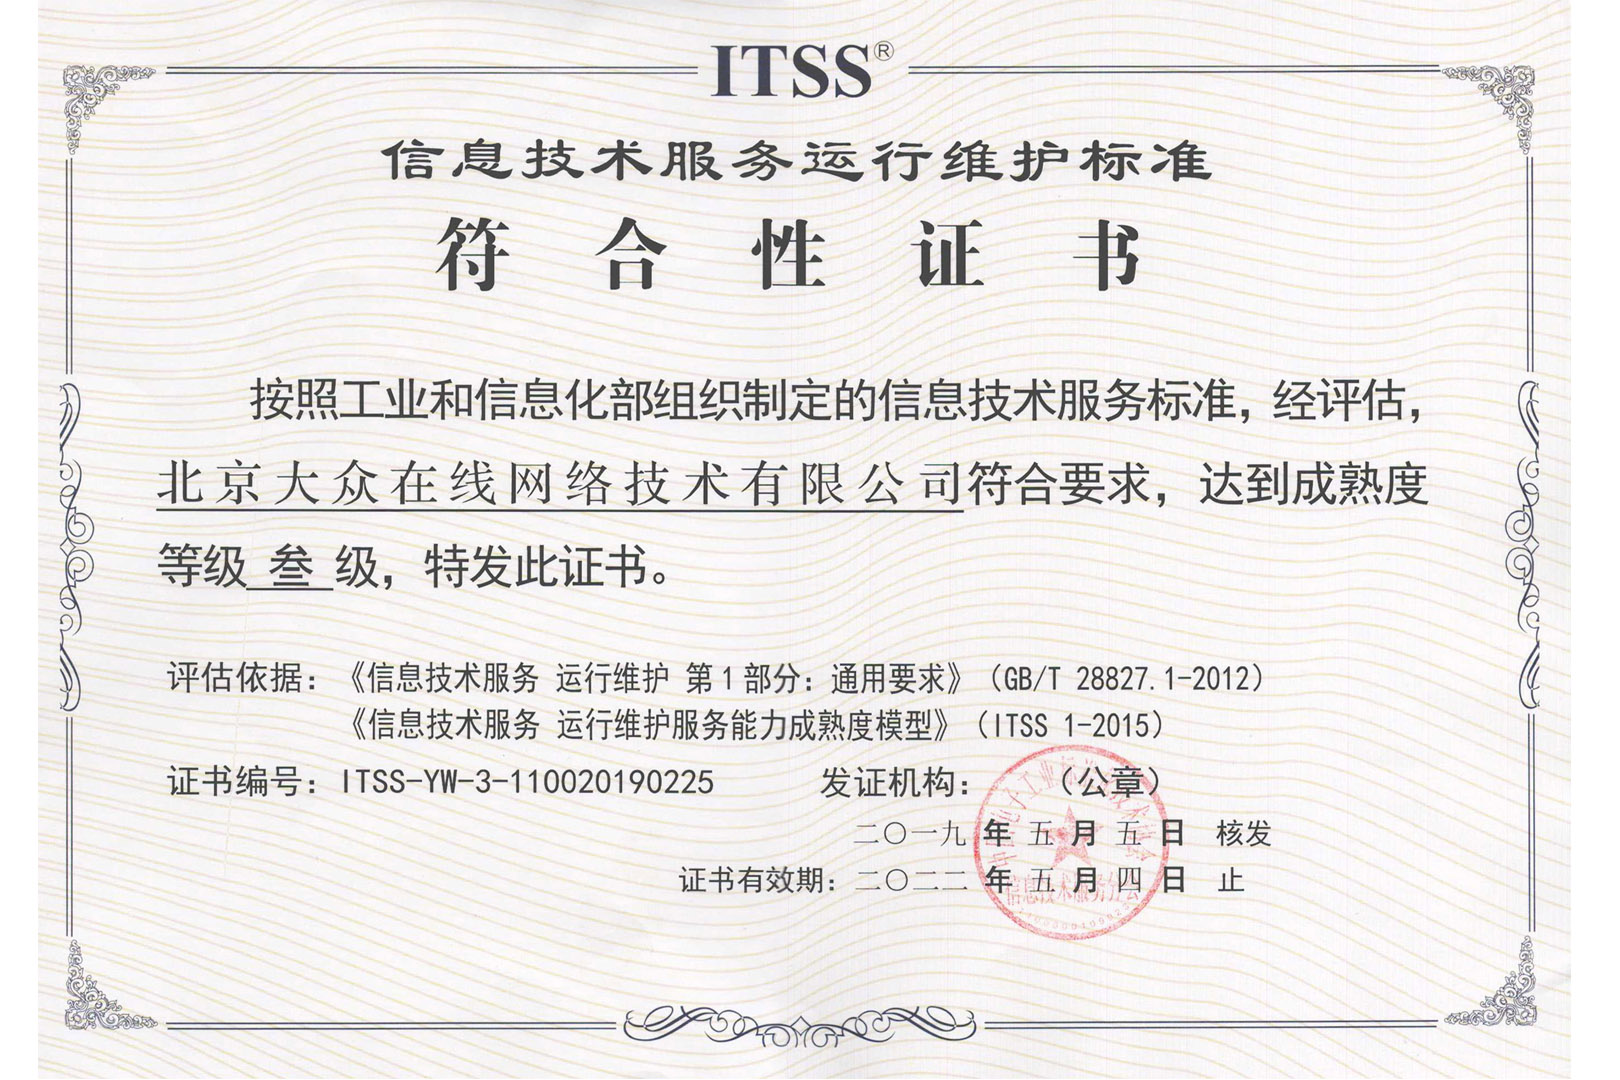 大众在线荣获ITSS信息技术服务运维标准符合性证书